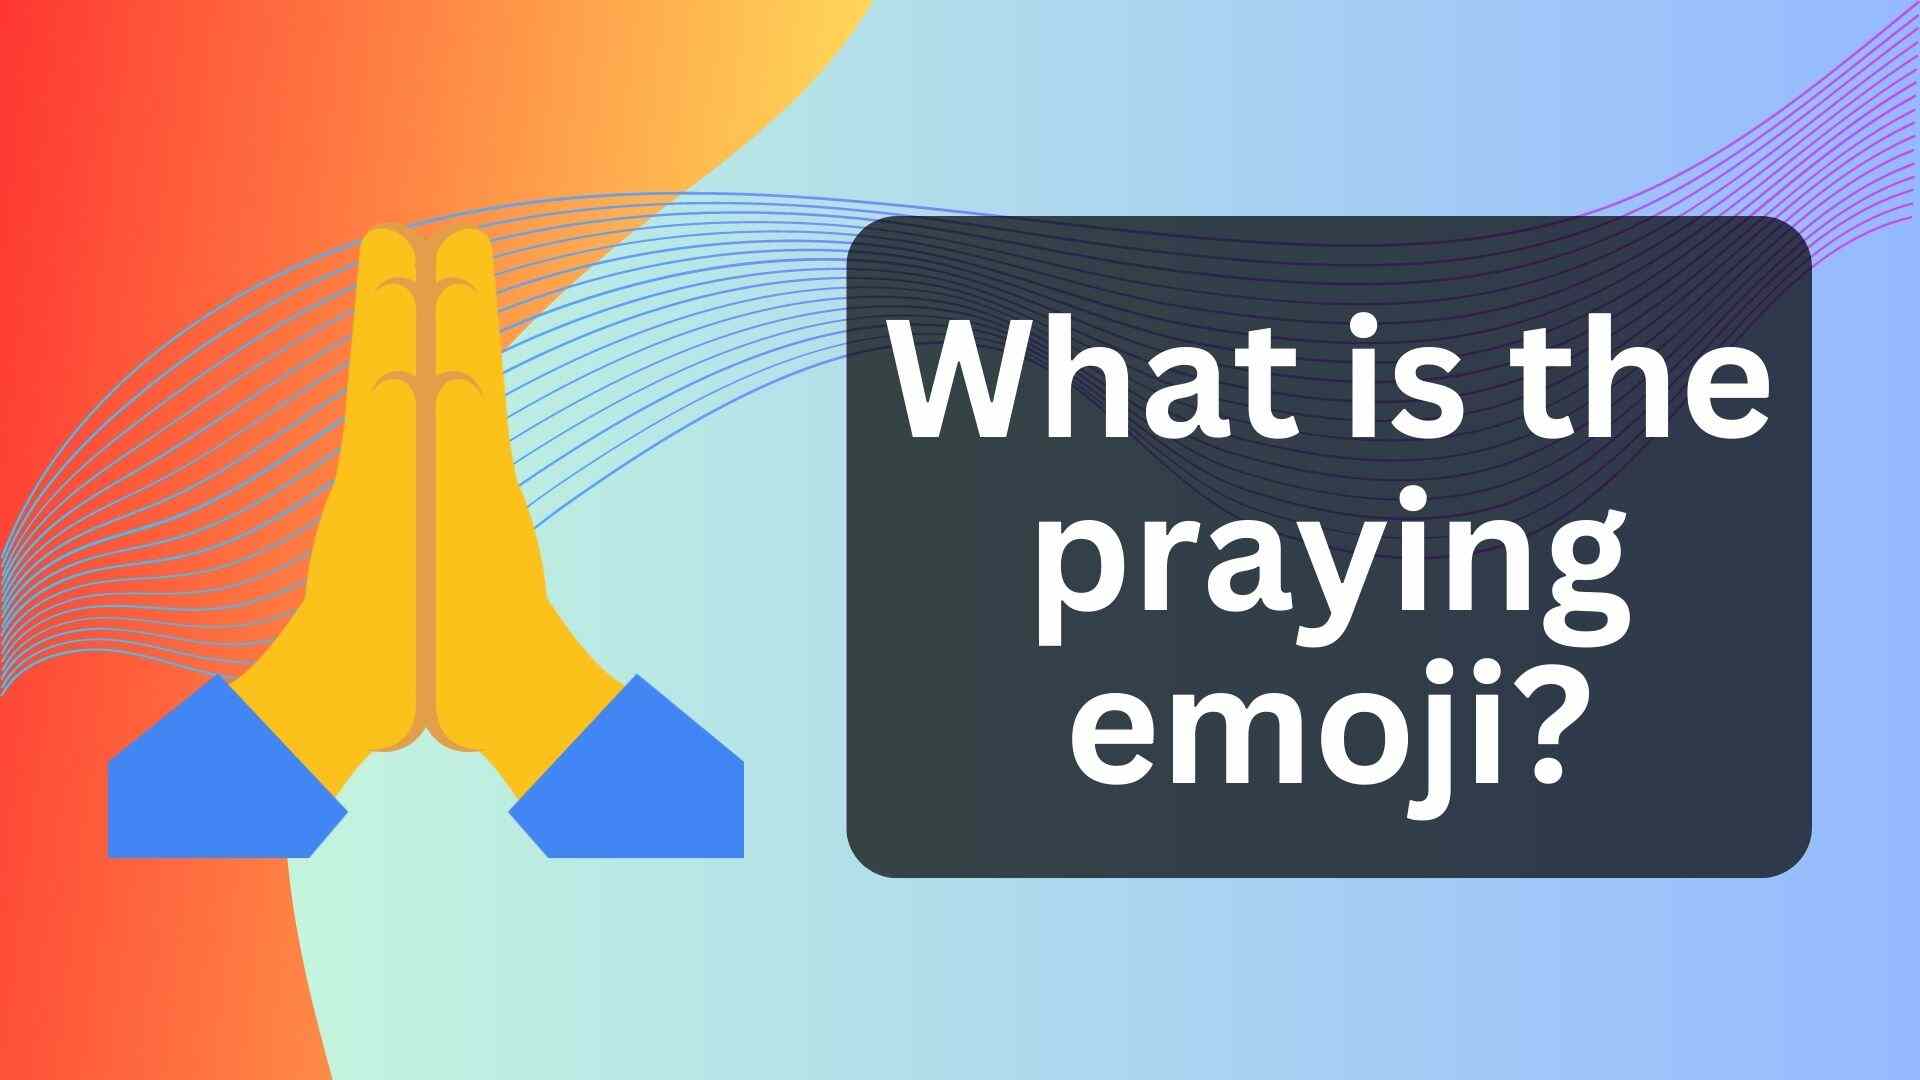 What is the praying emoji?